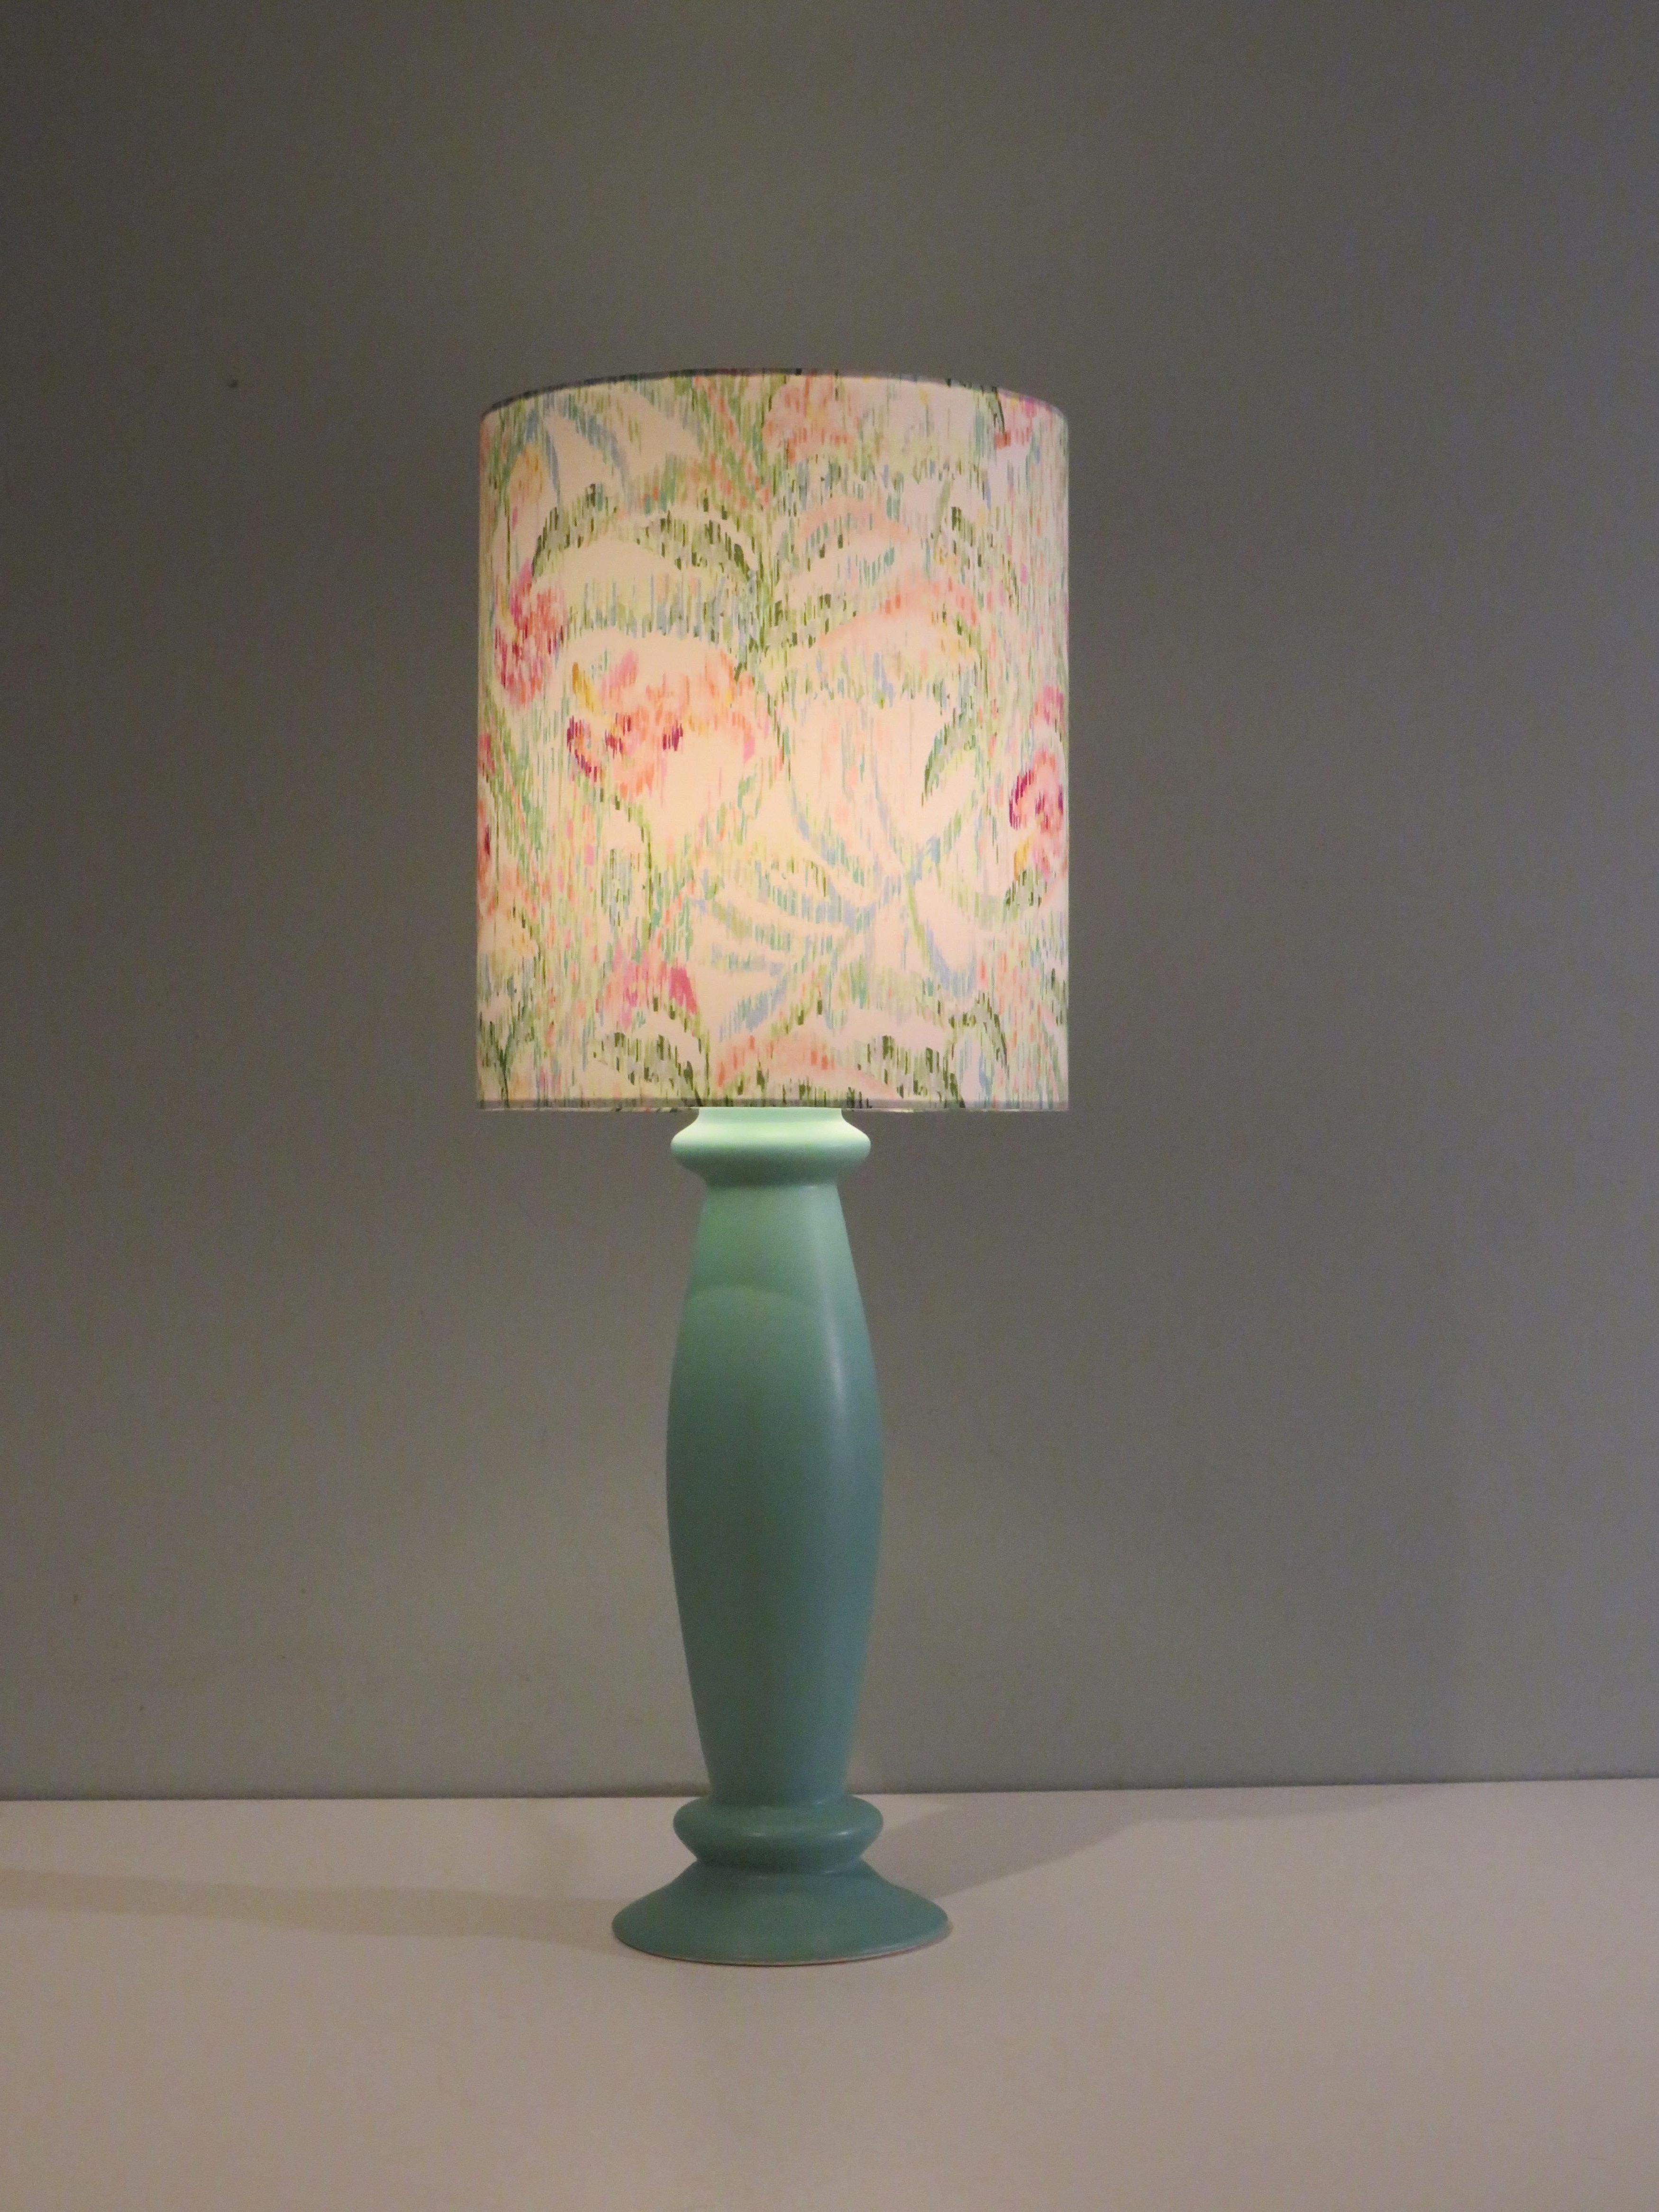 Der Lampenfuß hat eine matte mintgrüne Glasur und eine schlanke Form.
Die Tischlampe hat einen professionell handgefertigten, individuellen Lampenschirm aus feiner Baumwolle mit einem floralen Muster in sanften Farben.
Die Tischleuchte hat ein